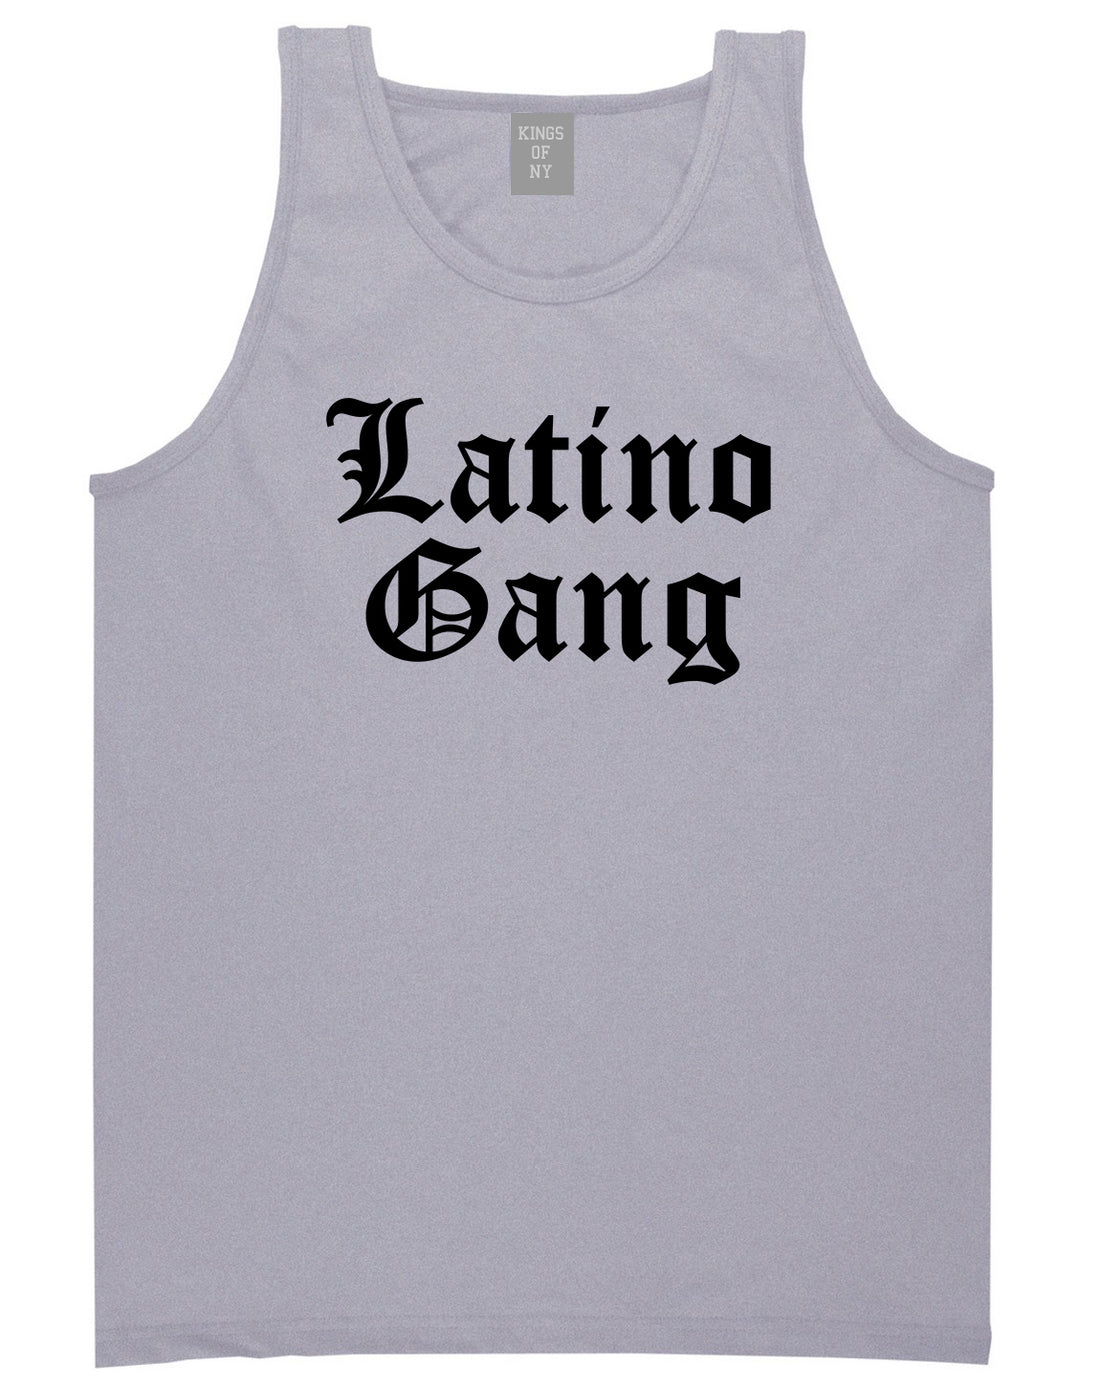 Latino Gang Mens Tank Top Shirt Grey by Kings Of NY